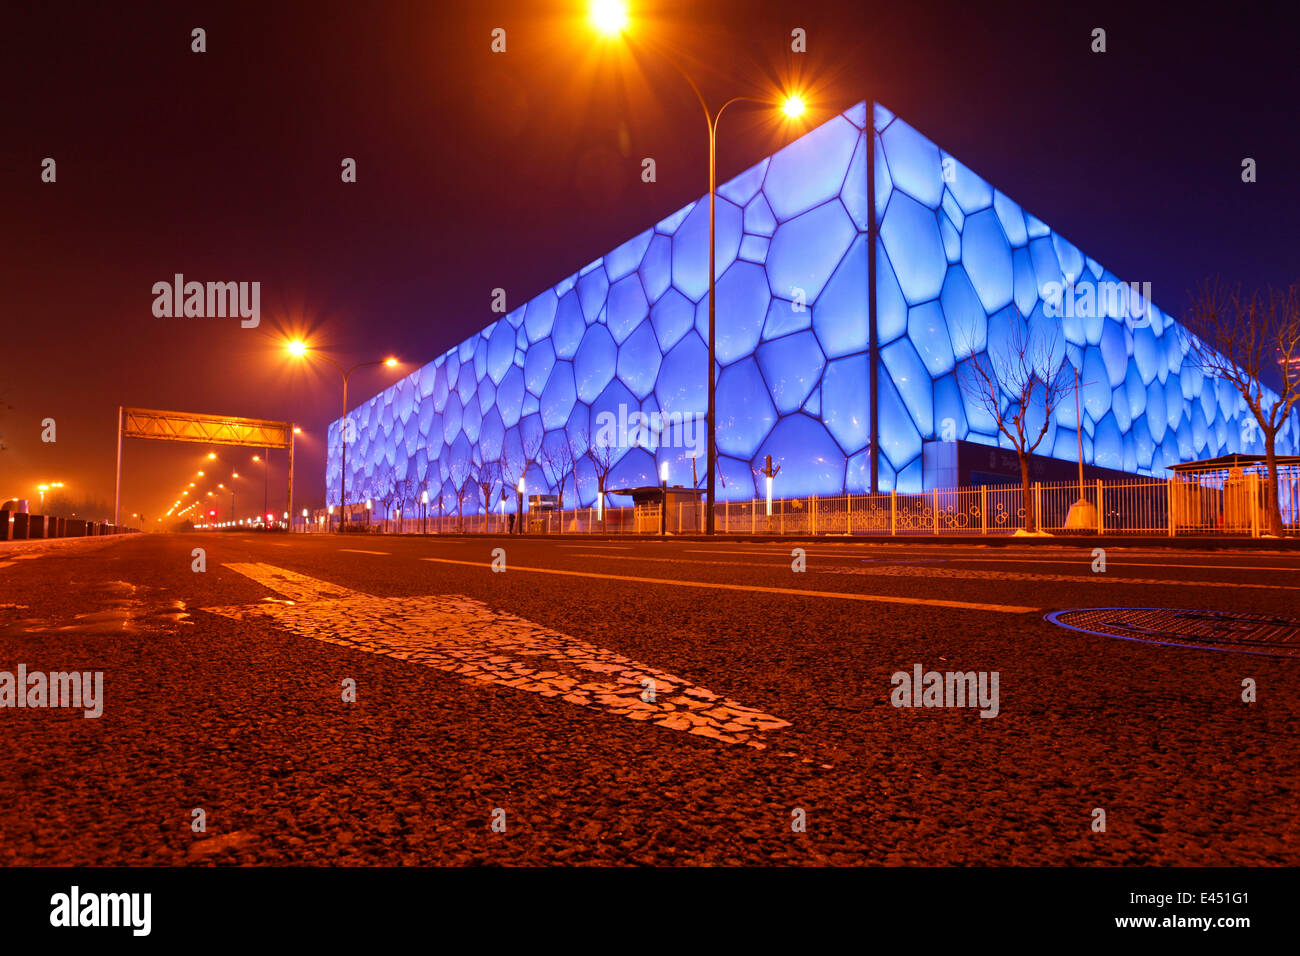 Le Centre national de natation de Pékin, également de Cube, Beijing, Chine Banque D'Images